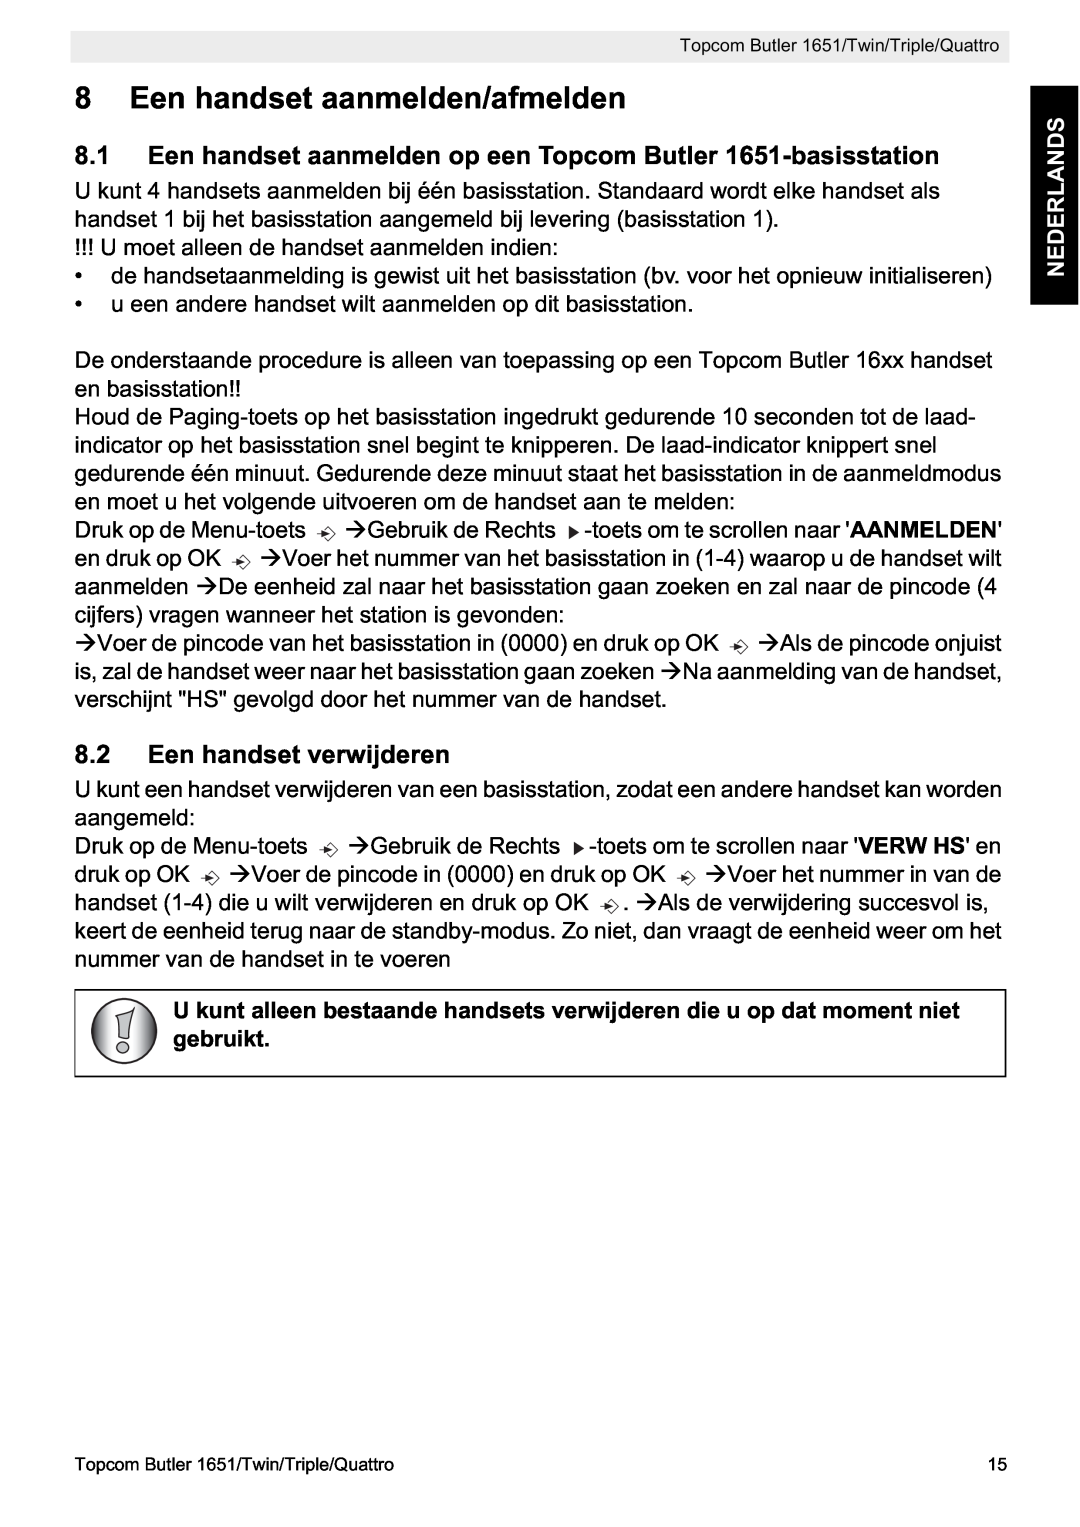 Topcom manual Een handset aanmelden/afmelden, Een handset aanmelden op een Topcom Butler 1651-basisstation, Nederlands 